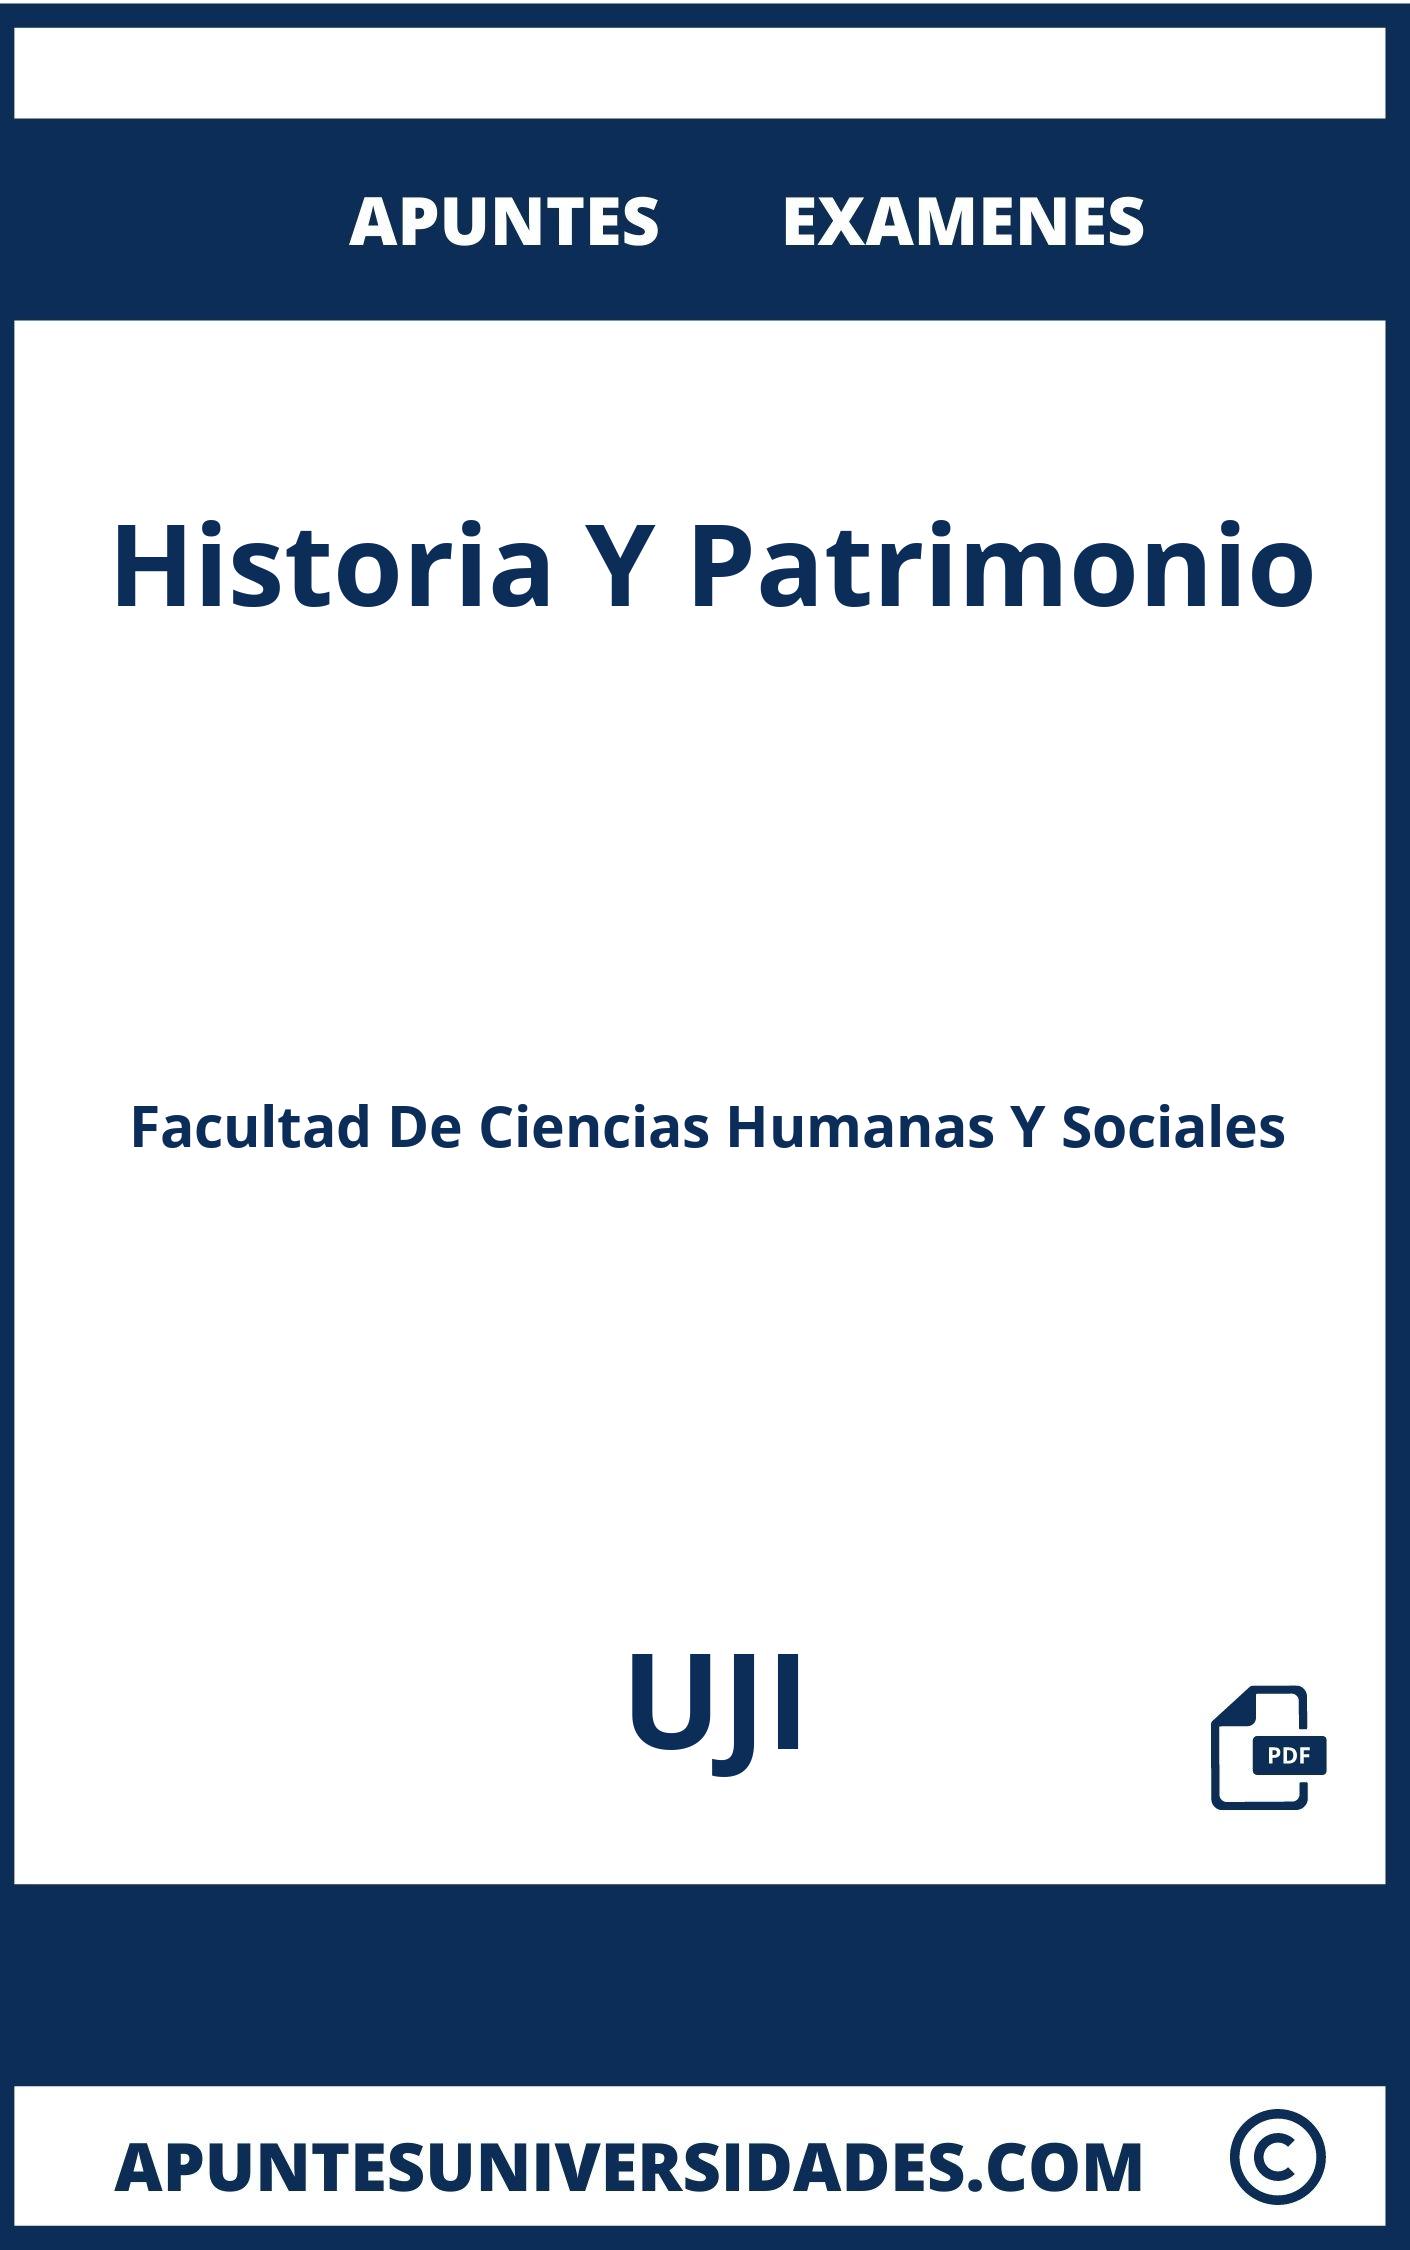 Examenes y Apuntes Historia Y Patrimonio UJI